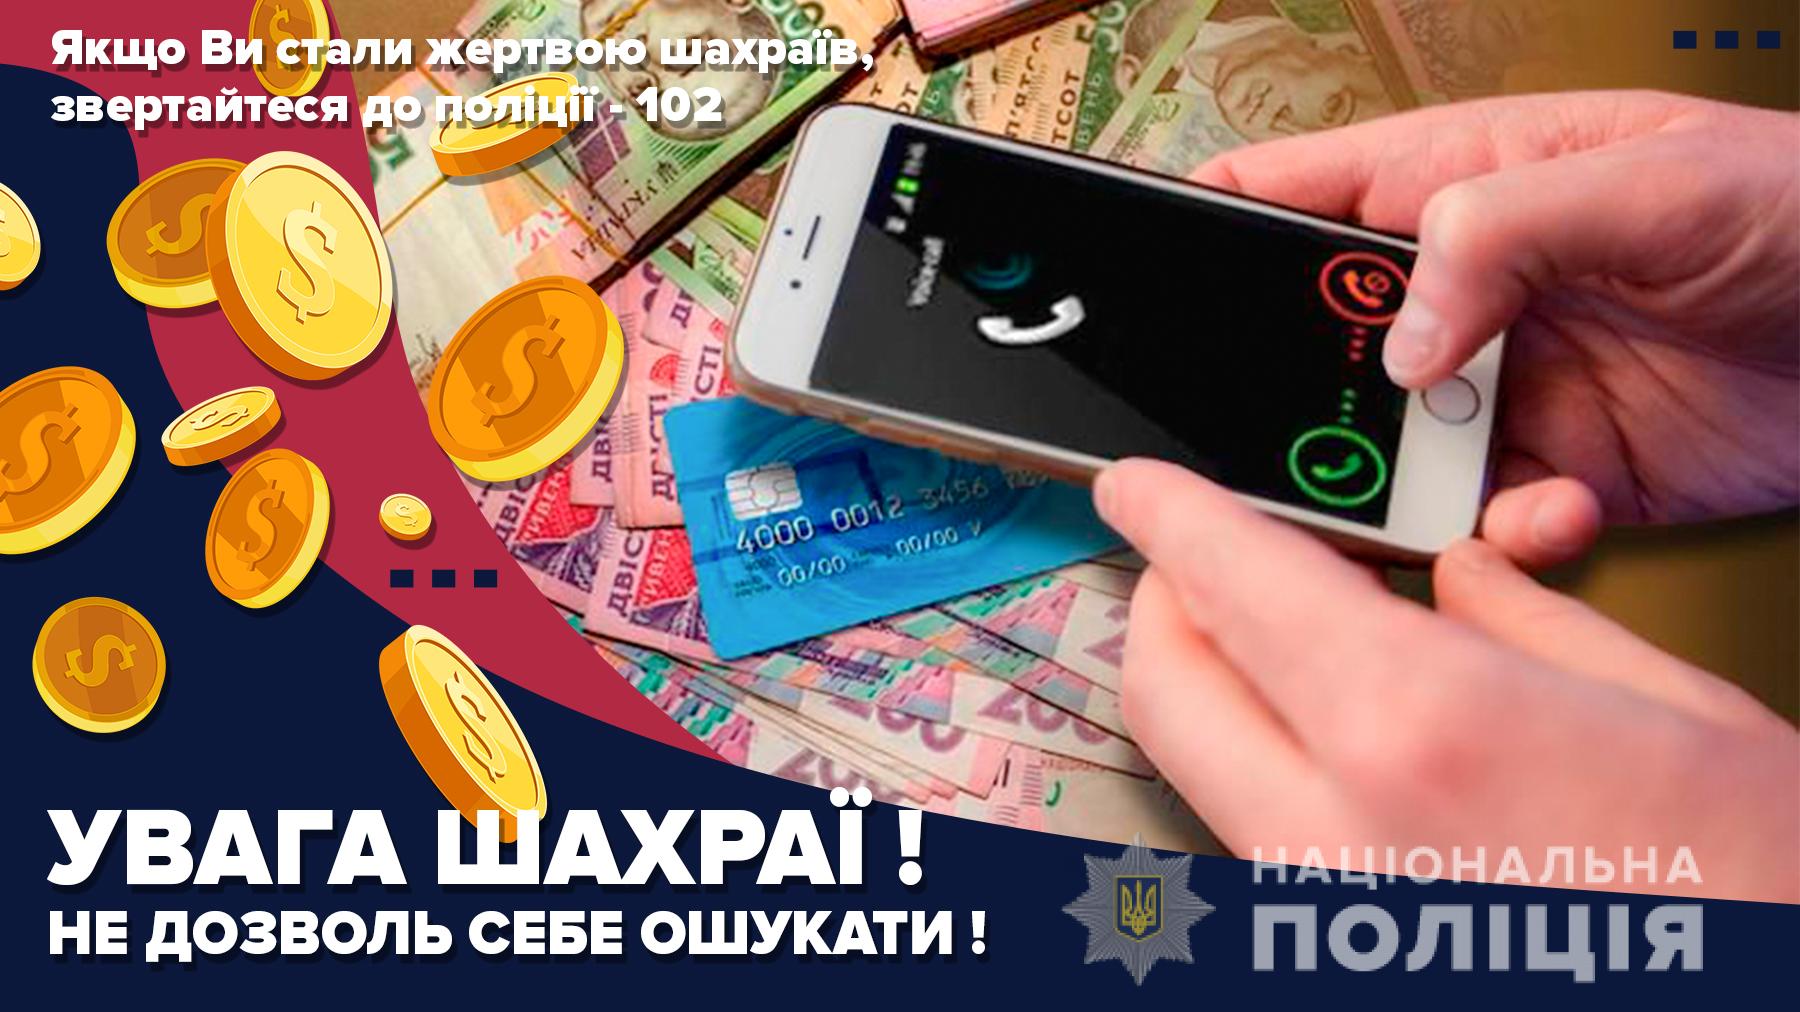 В Запорожской области активизировались мошенники: подробности